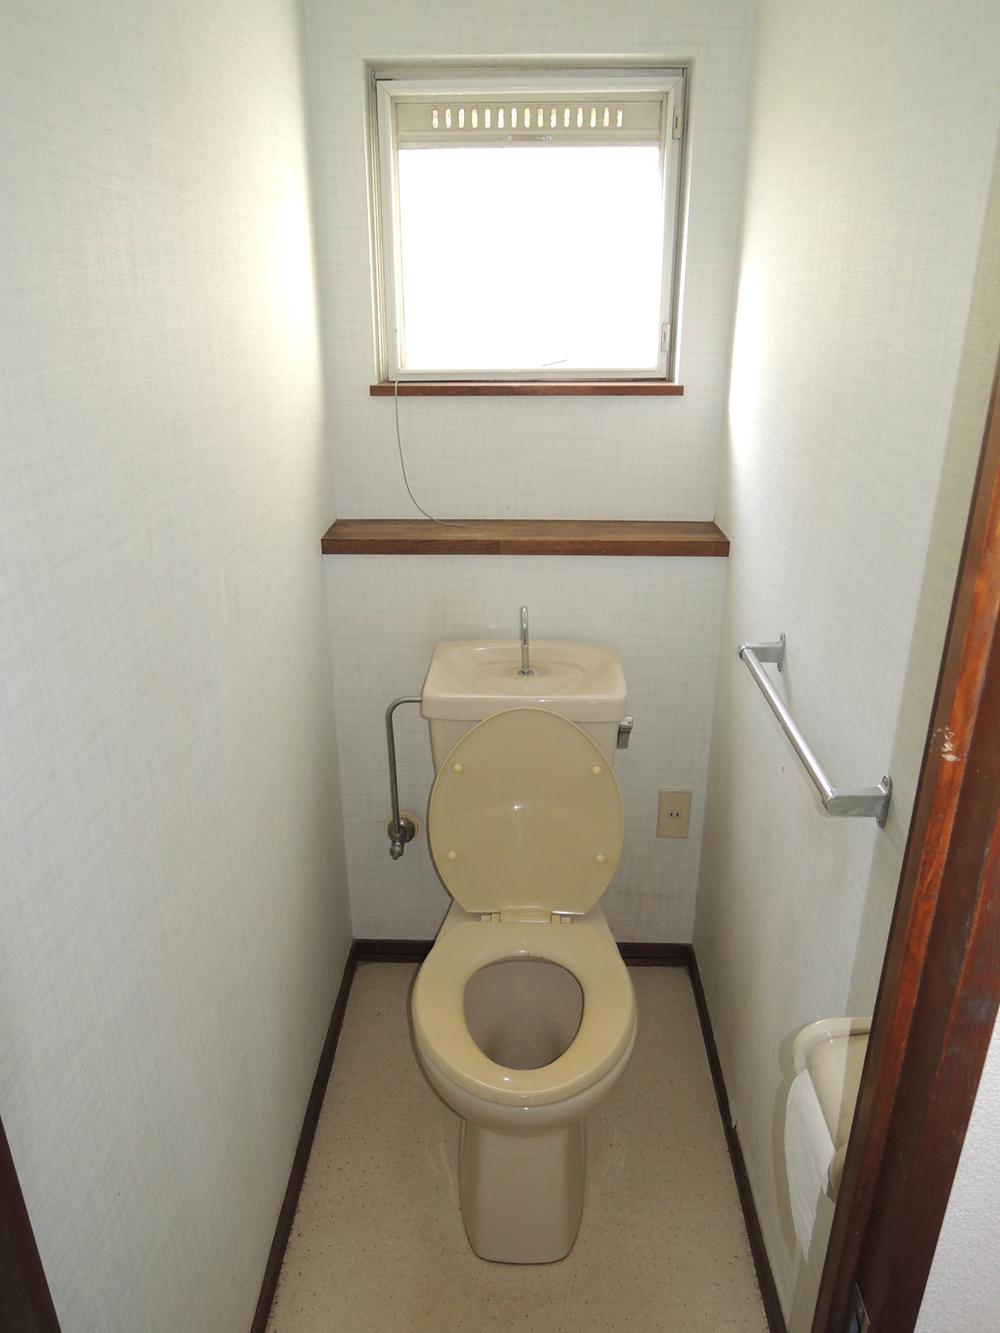 Toilet. Indoor (11 May 2012) shooting